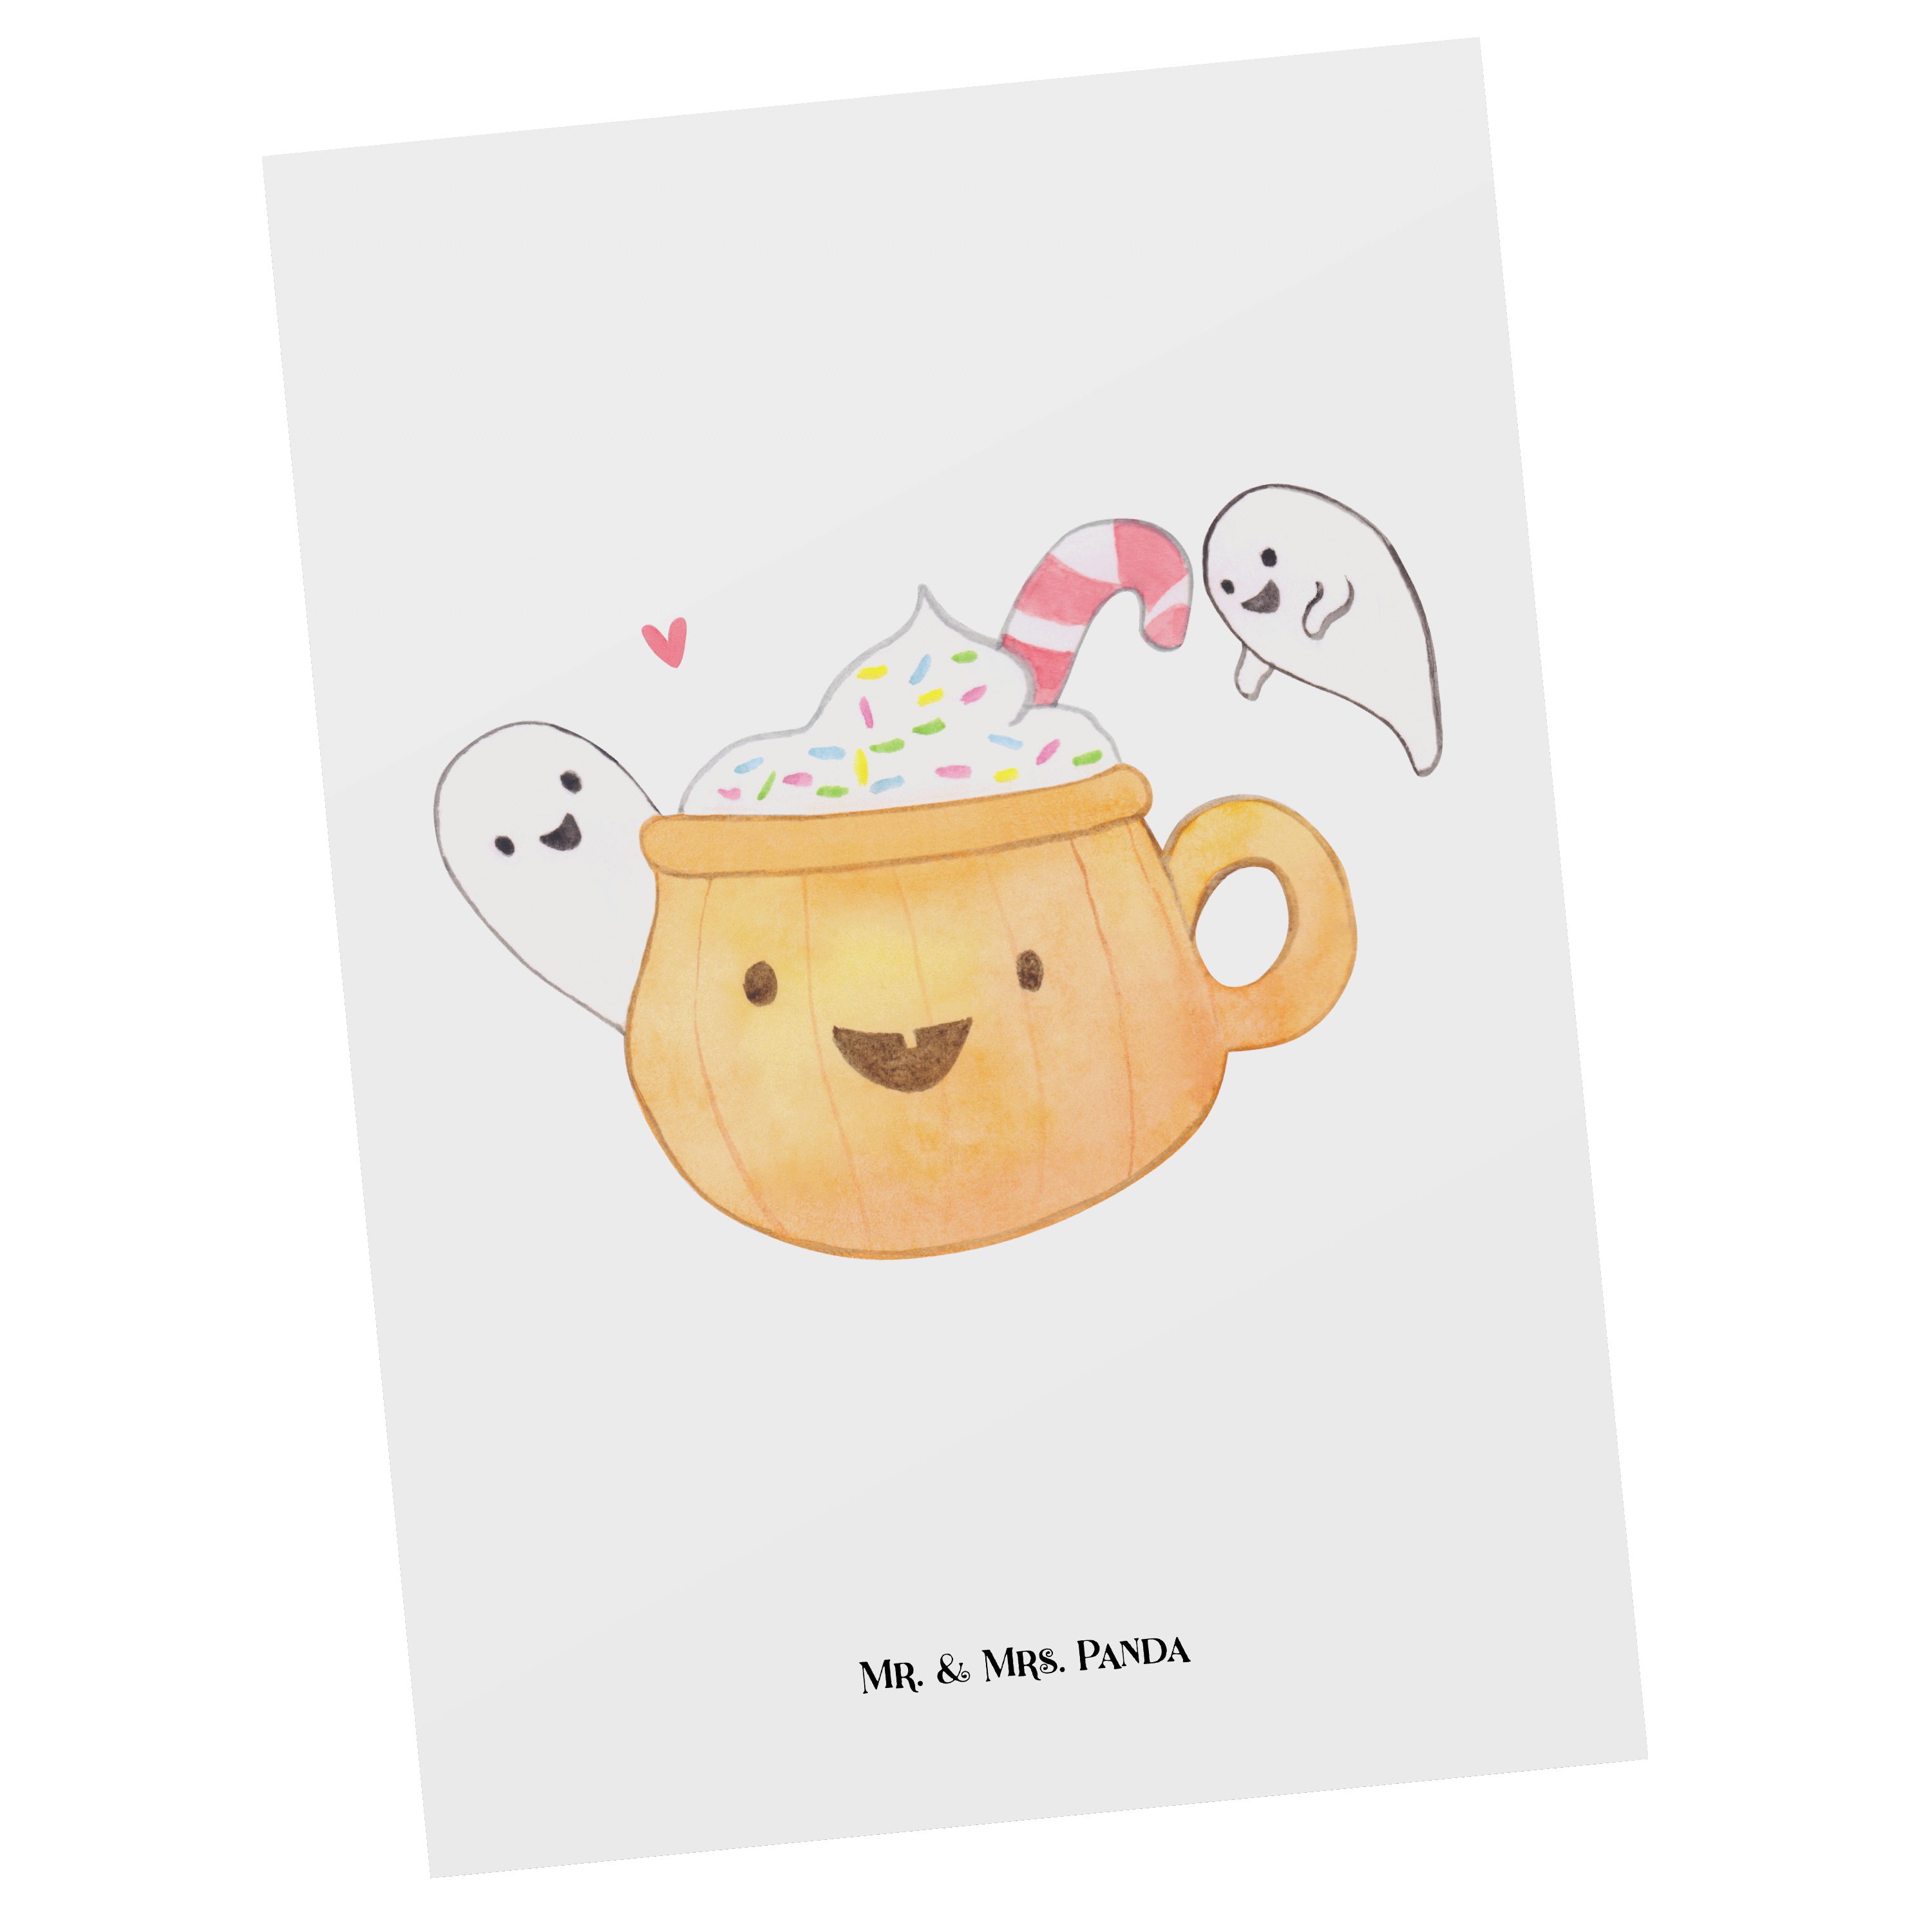 [Super-Sonderpreis] Mr. & Mrs. Panda Postkarte Grußkarte, - Geschenkkarte, Deko, Gespenst Geschenk, - Kaffee Weiß H